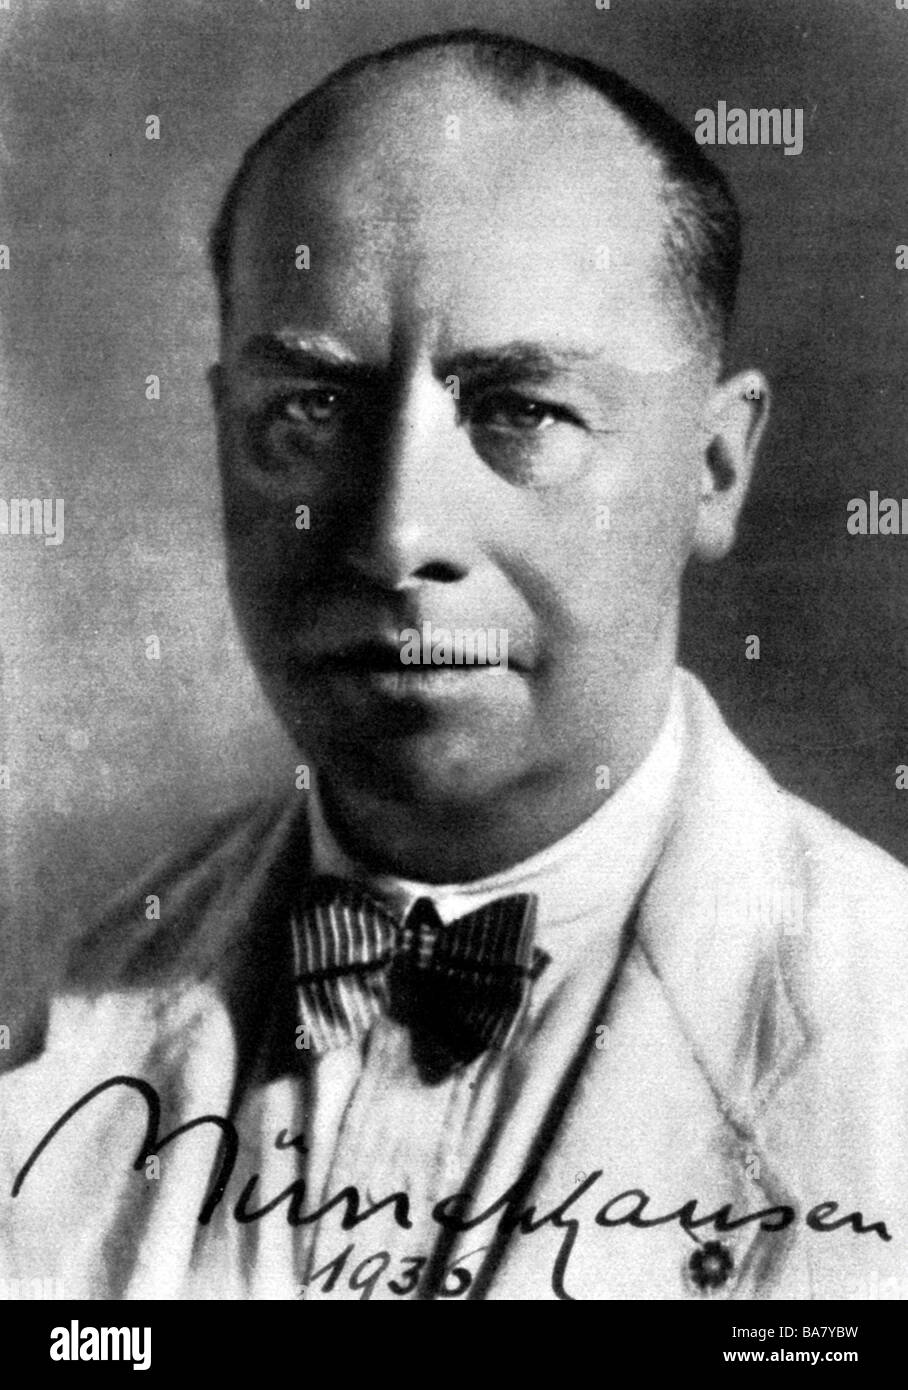 Münchhausen, Börries Freiherr von, 20.3.1874 - 16.3.1945, German author / writer (poet), portrait, 1936, Stock Photo